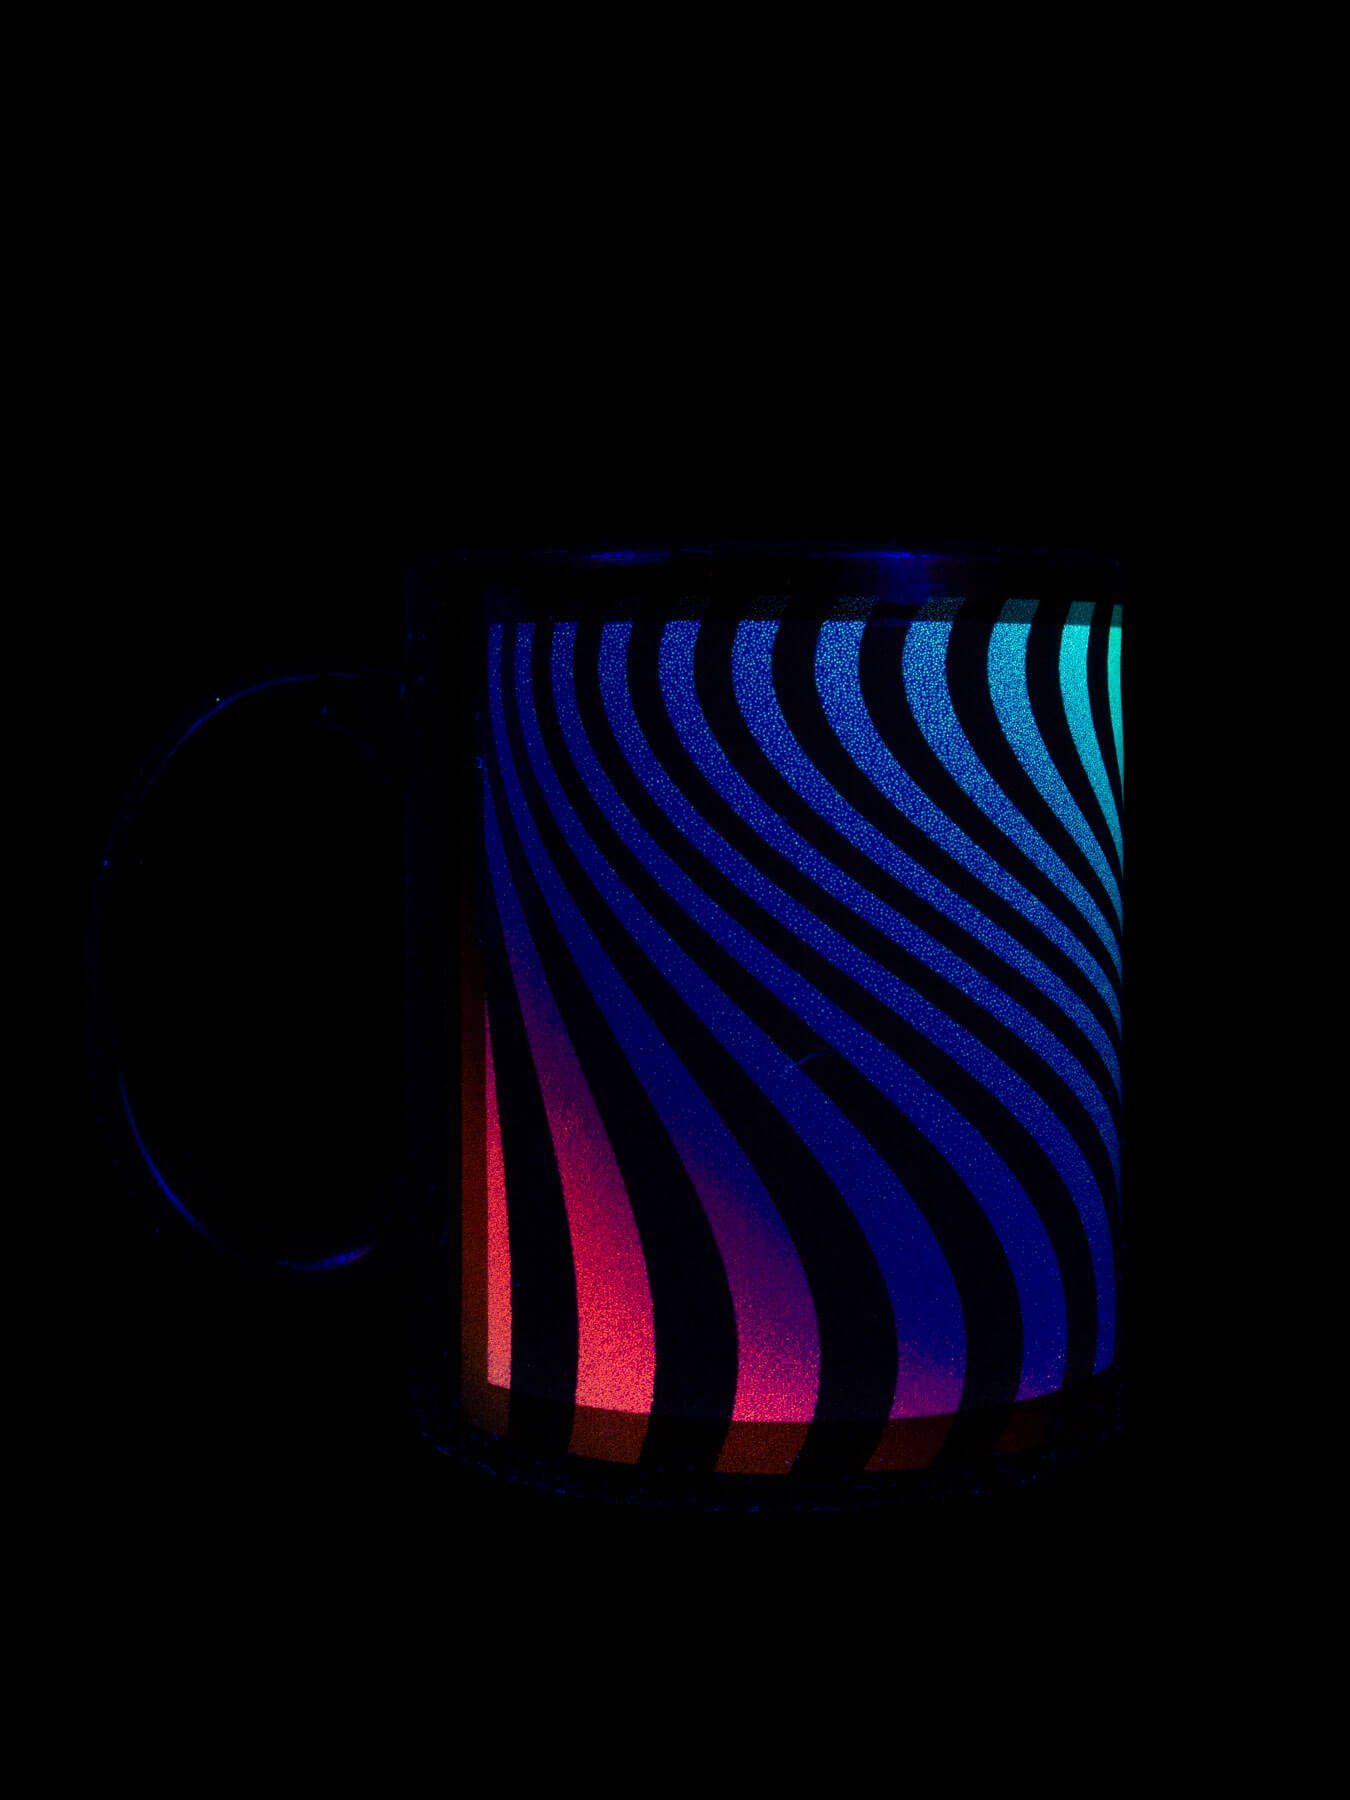 Motiv UV-aktiv, Keramik, "Neon unter Schwarzlicht PSYWORK Cup Waves", Tasse leuchtet Fluo Tasse Neon